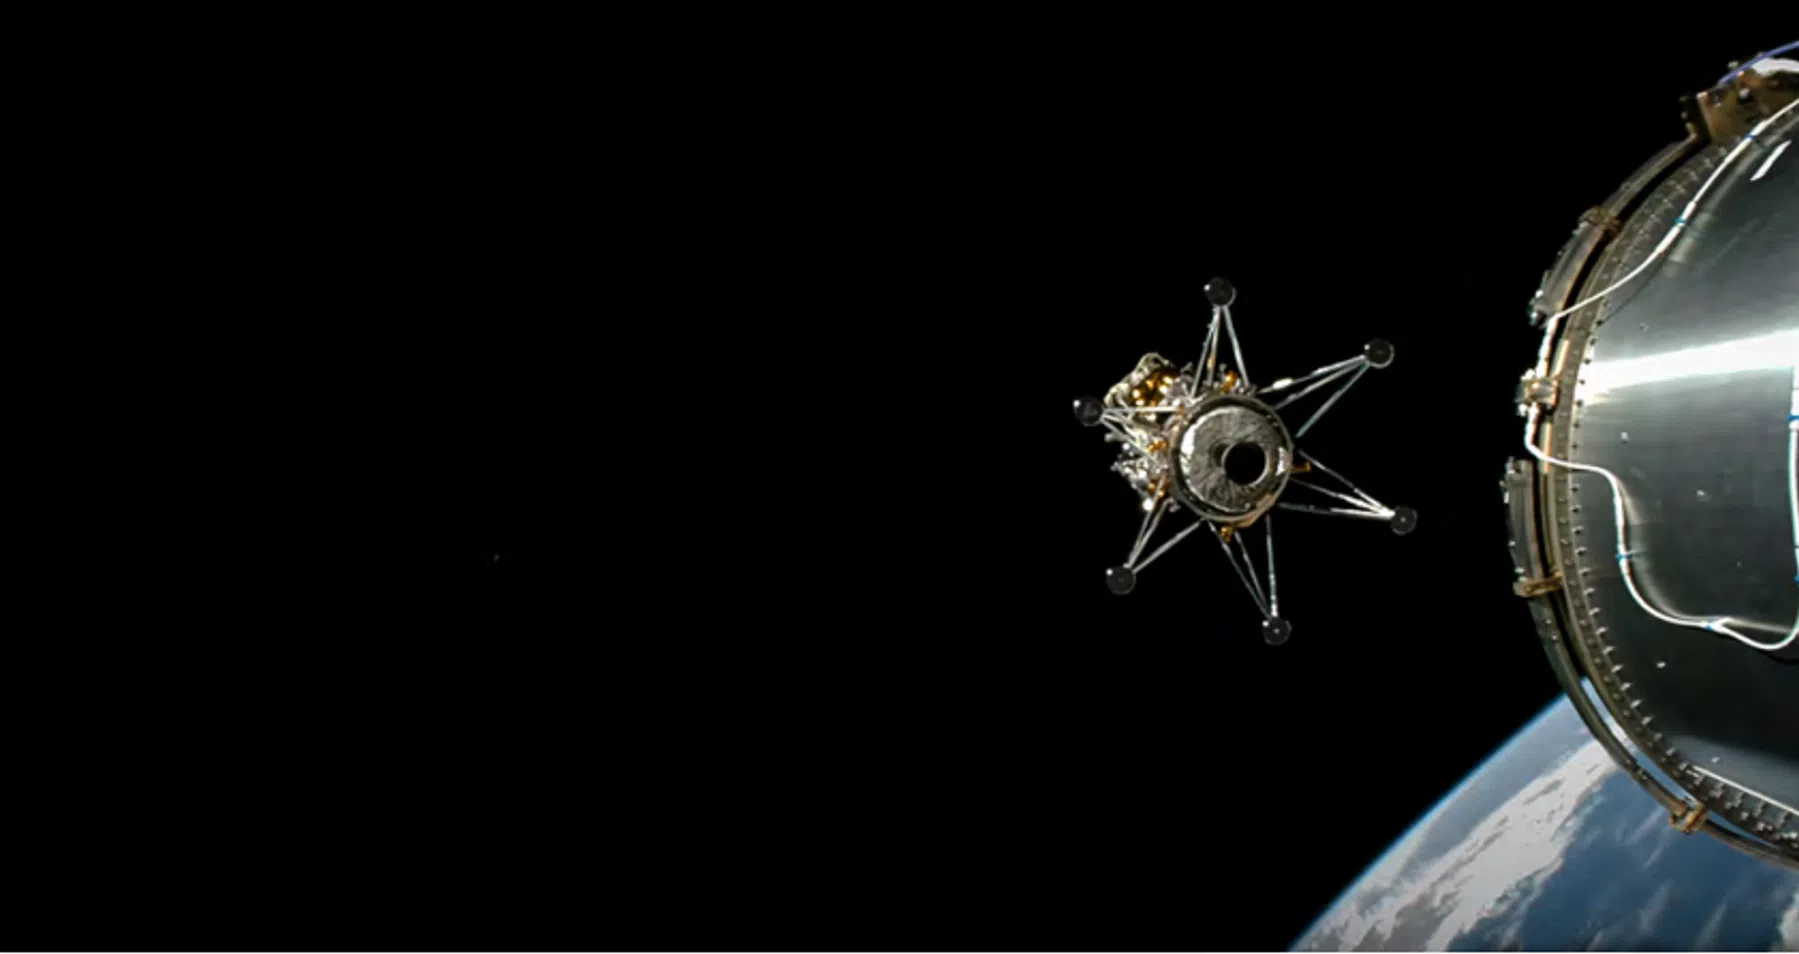 Maanlanding Odysseus toch niet helemaal gelukt: ruimtevaartuig ligt op zijn zij